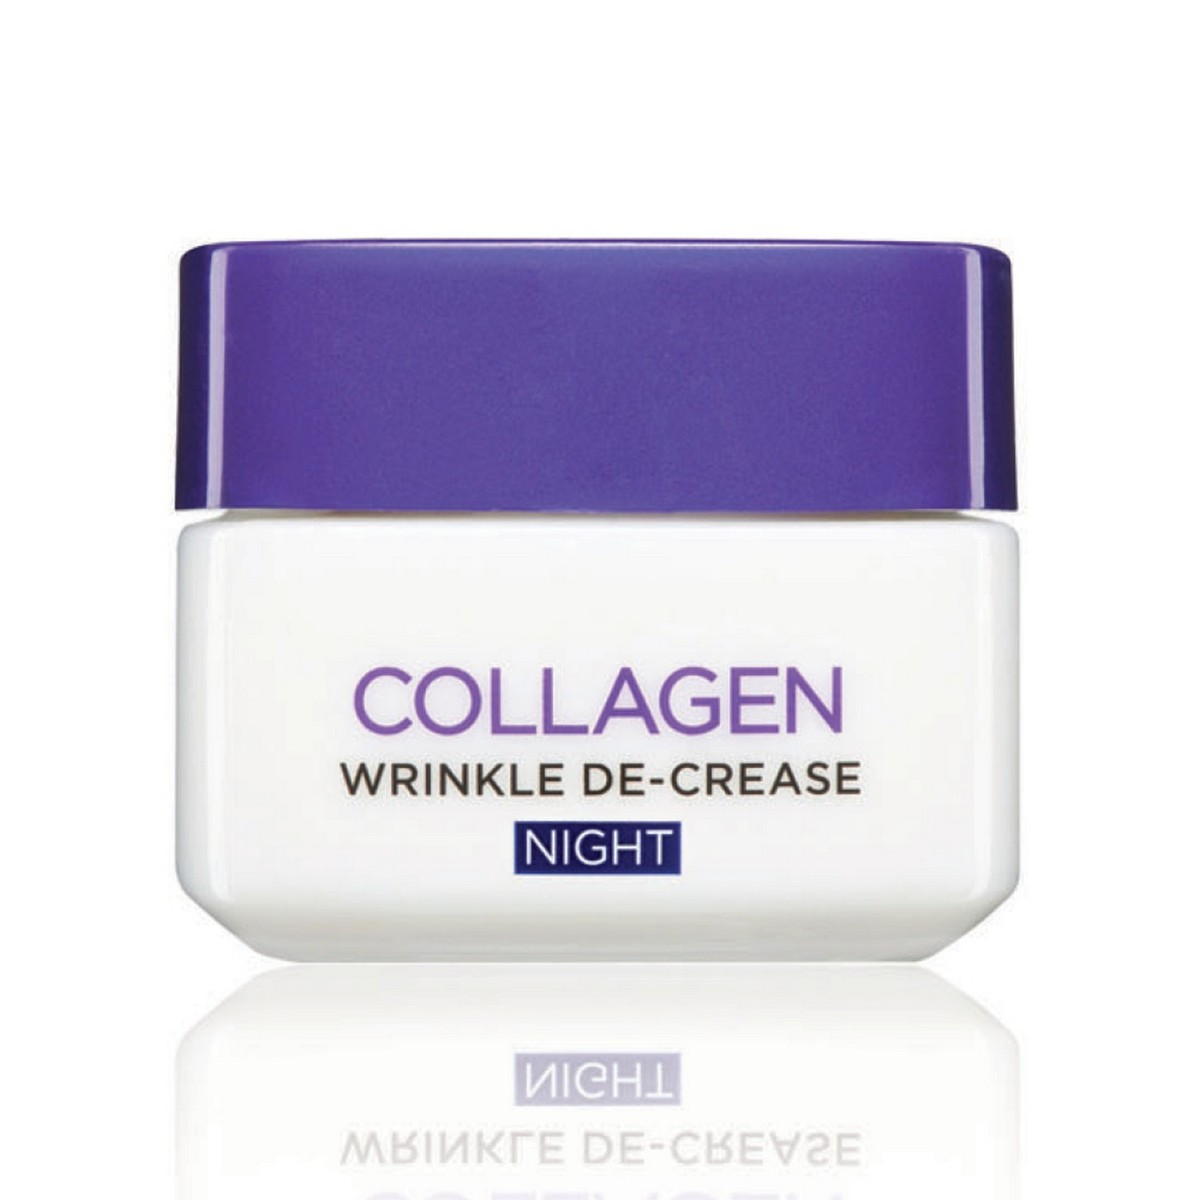 Loreal Collagen Re-Plumper Night Cream 50 ml